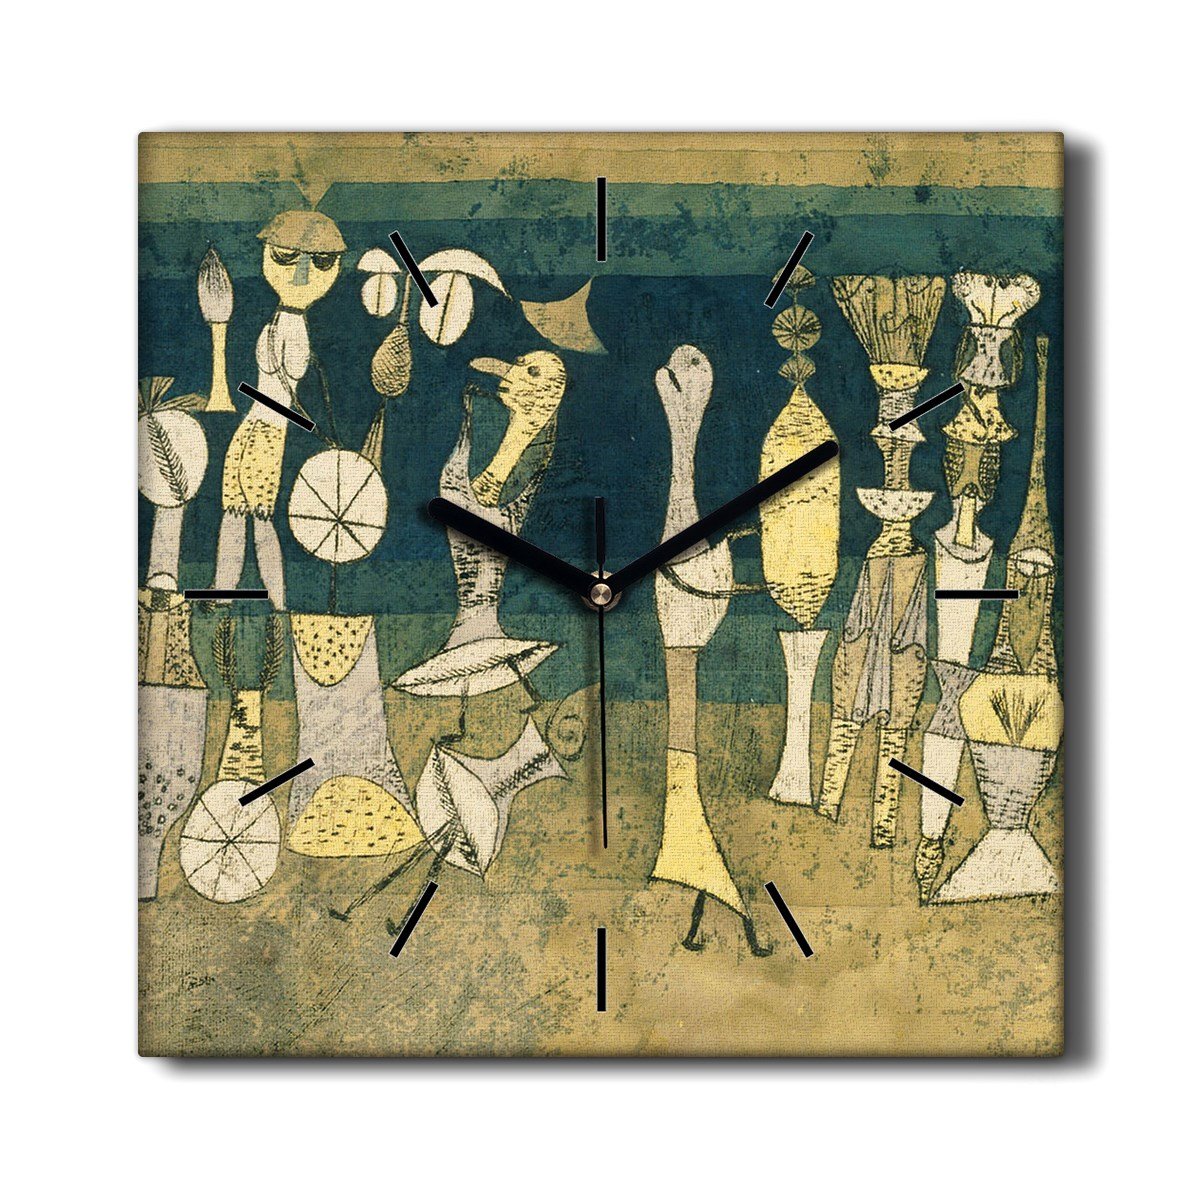 Wiszący zegar na płótnie kuchenny Komedia 30x30 cm, Coloray